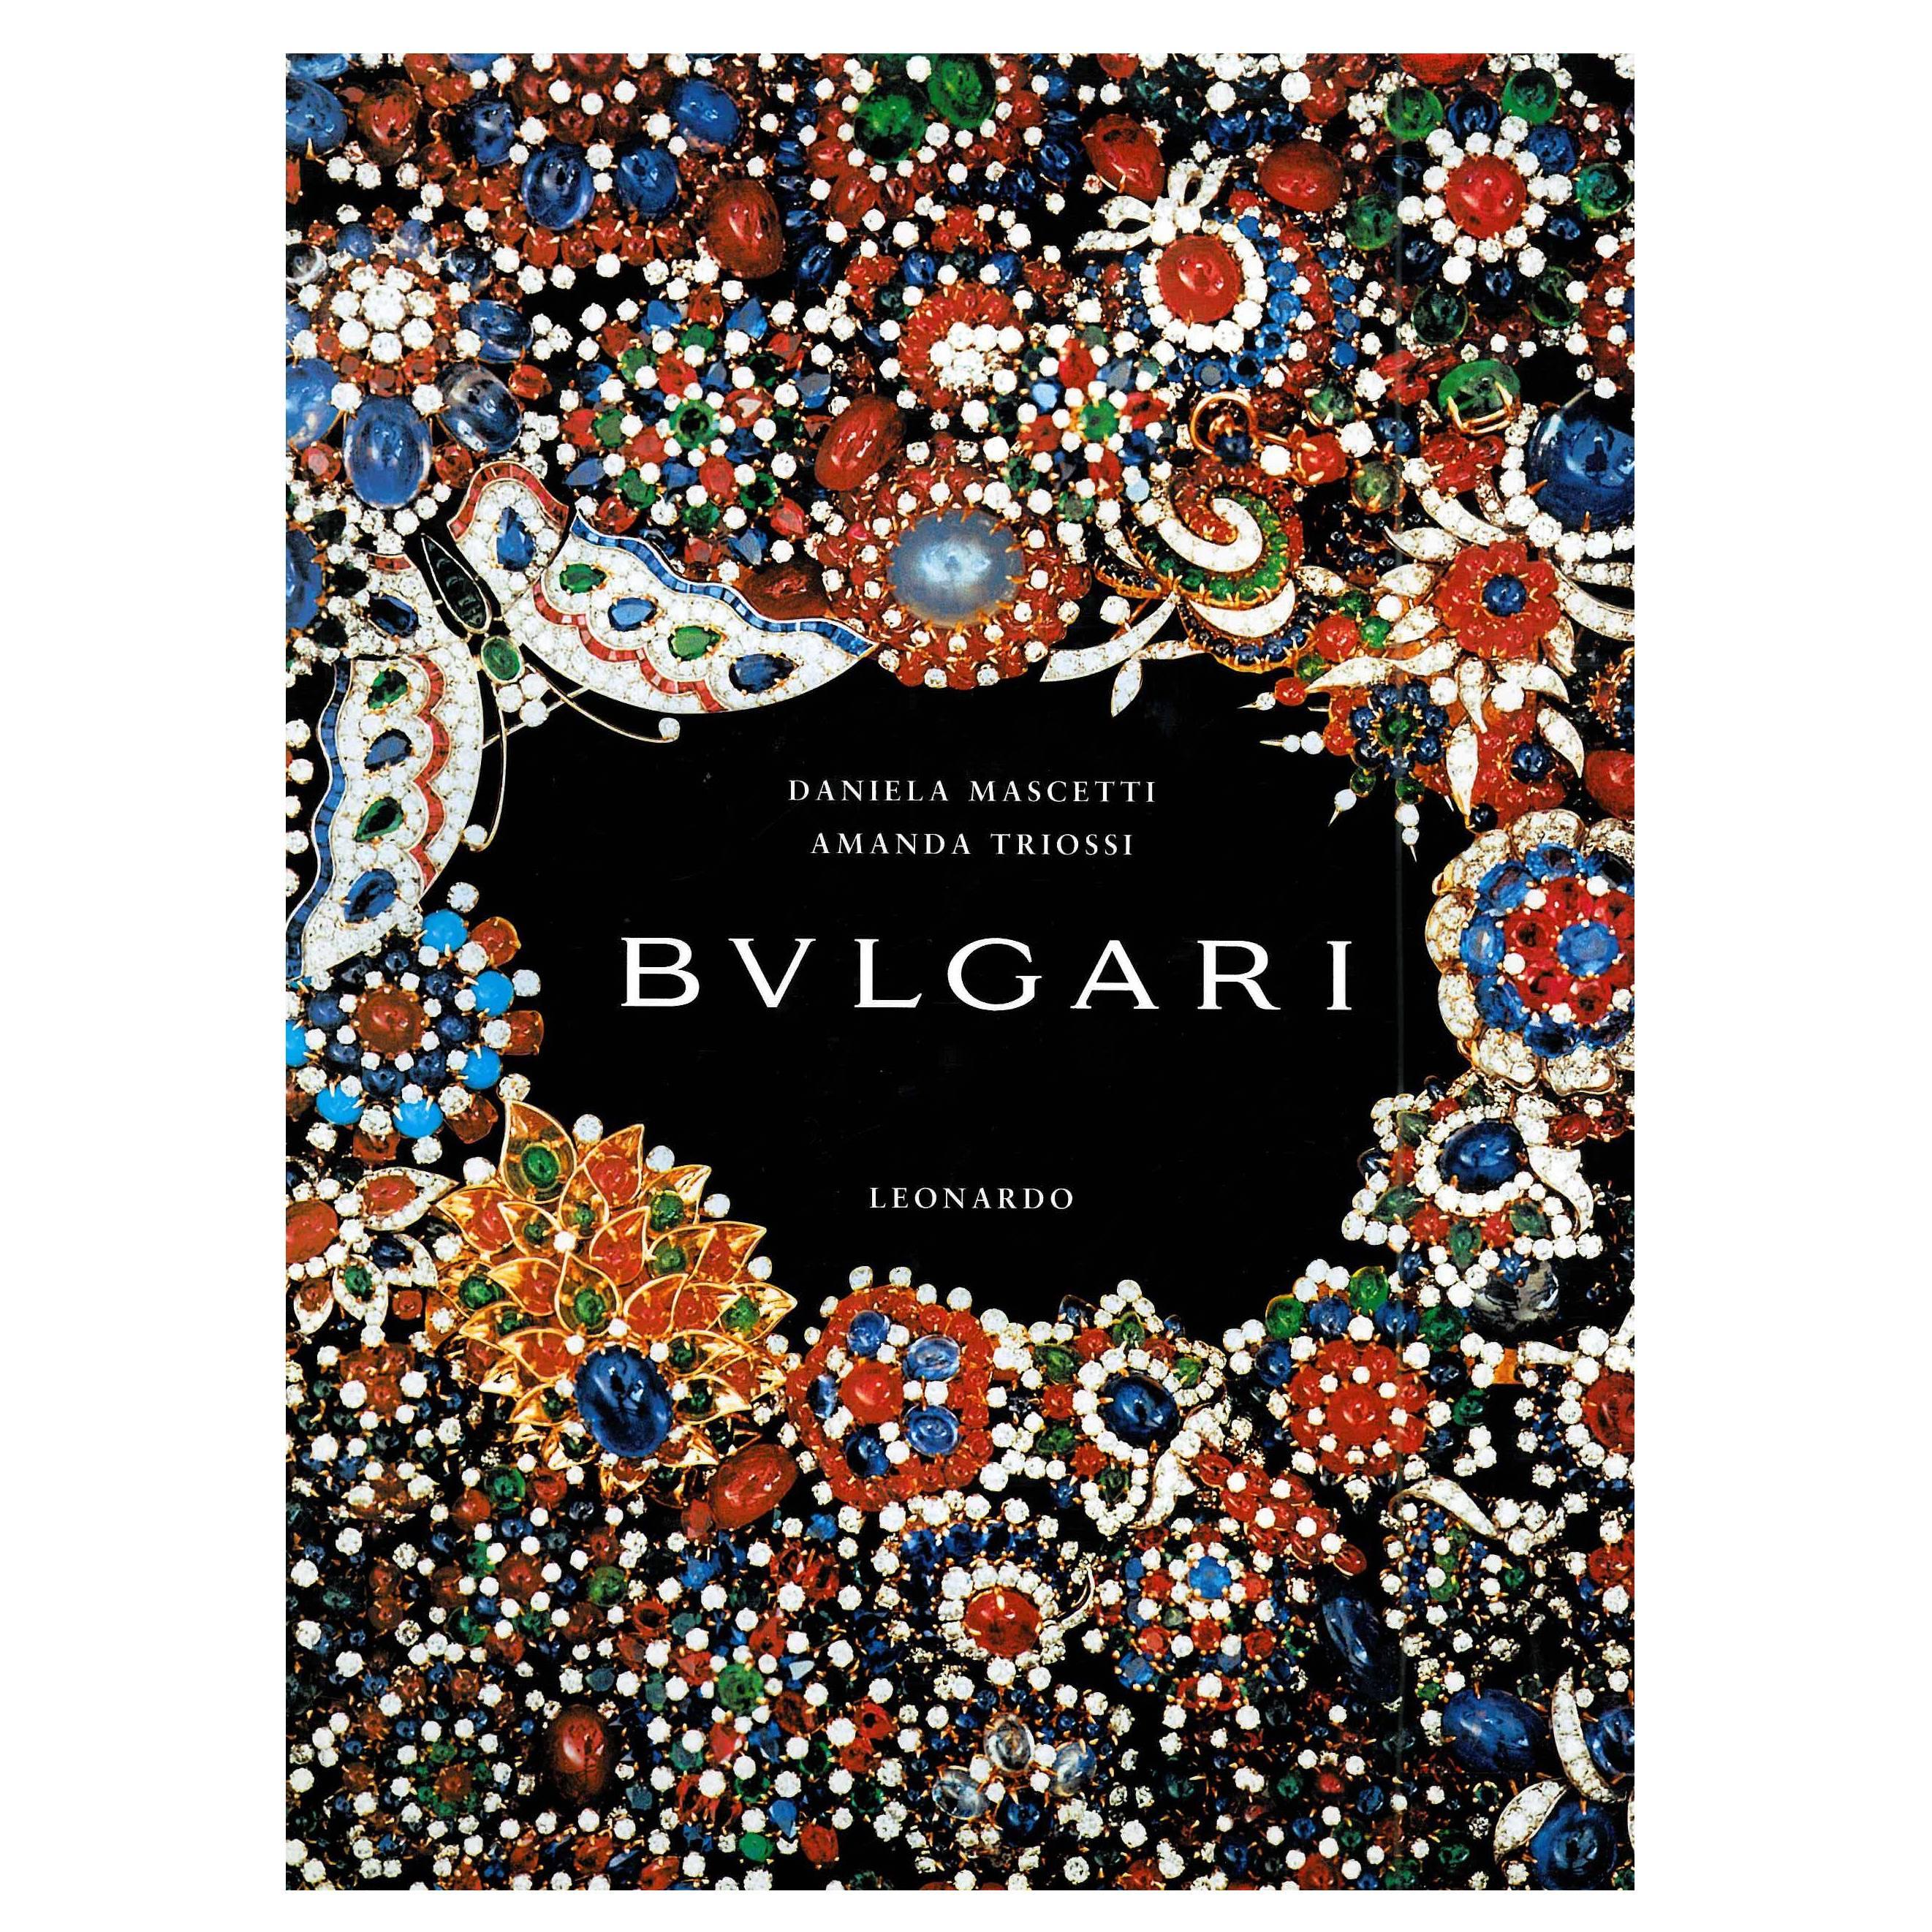 Bulgari (Livre) en vente